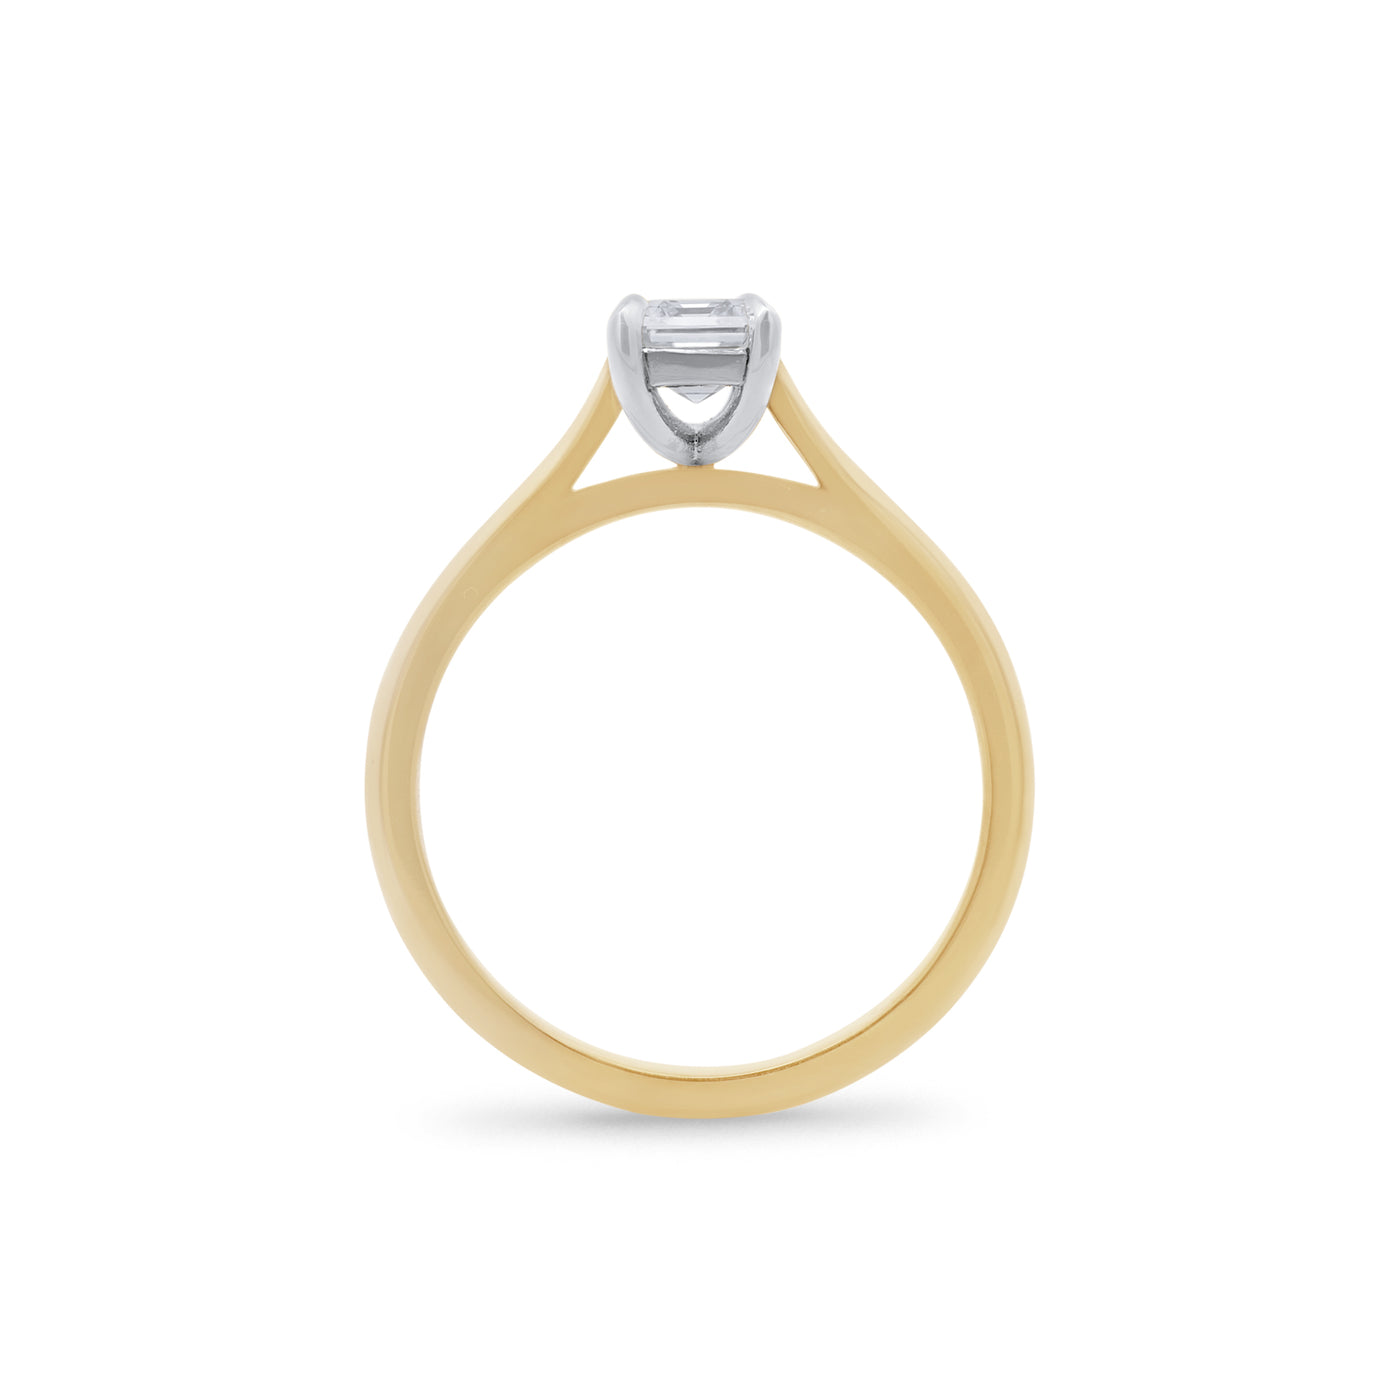 Alice: Emerald Cut Diamond Solitaire Ring